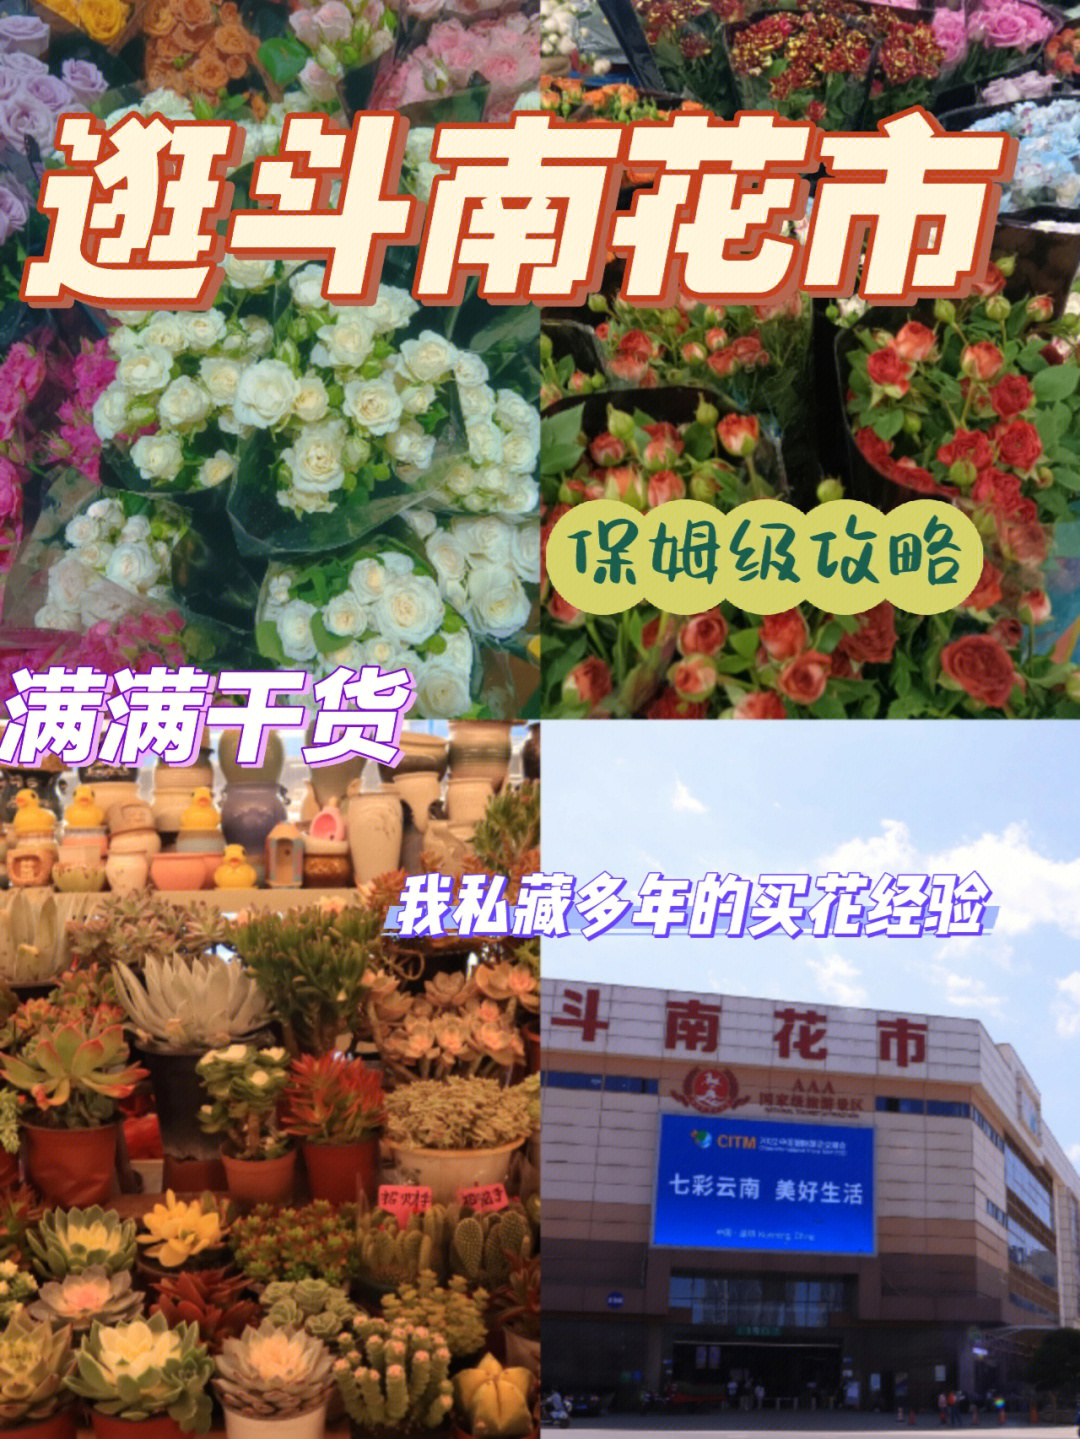 事项6015来云南一定要去一次斗南花市作为亚洲最大的鲜花交易市场